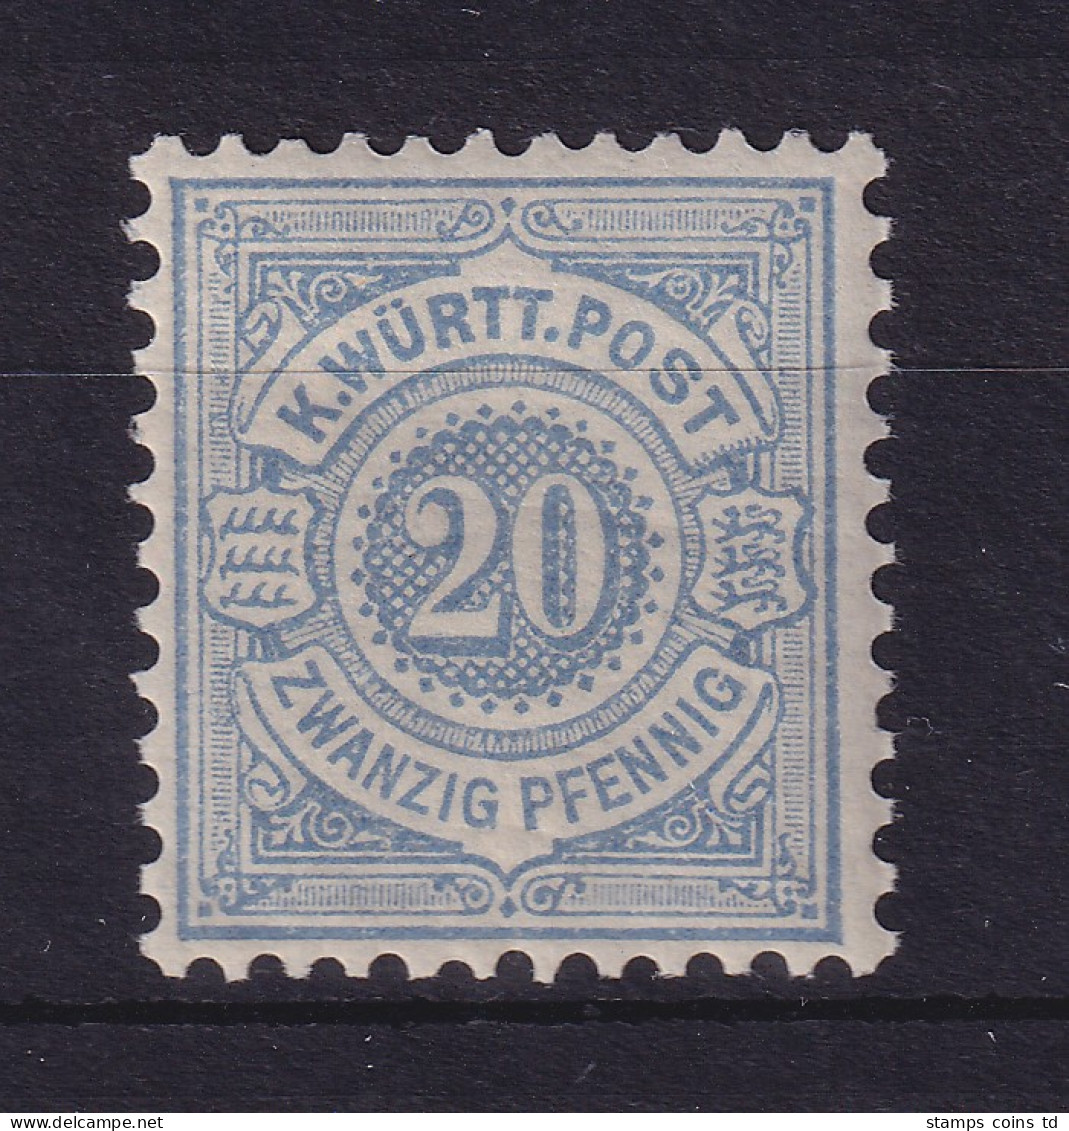 Württemberg 1875 Ziffer 20 Pfennig Mi.-Nr. 47a Postfrisch ** - Neufs